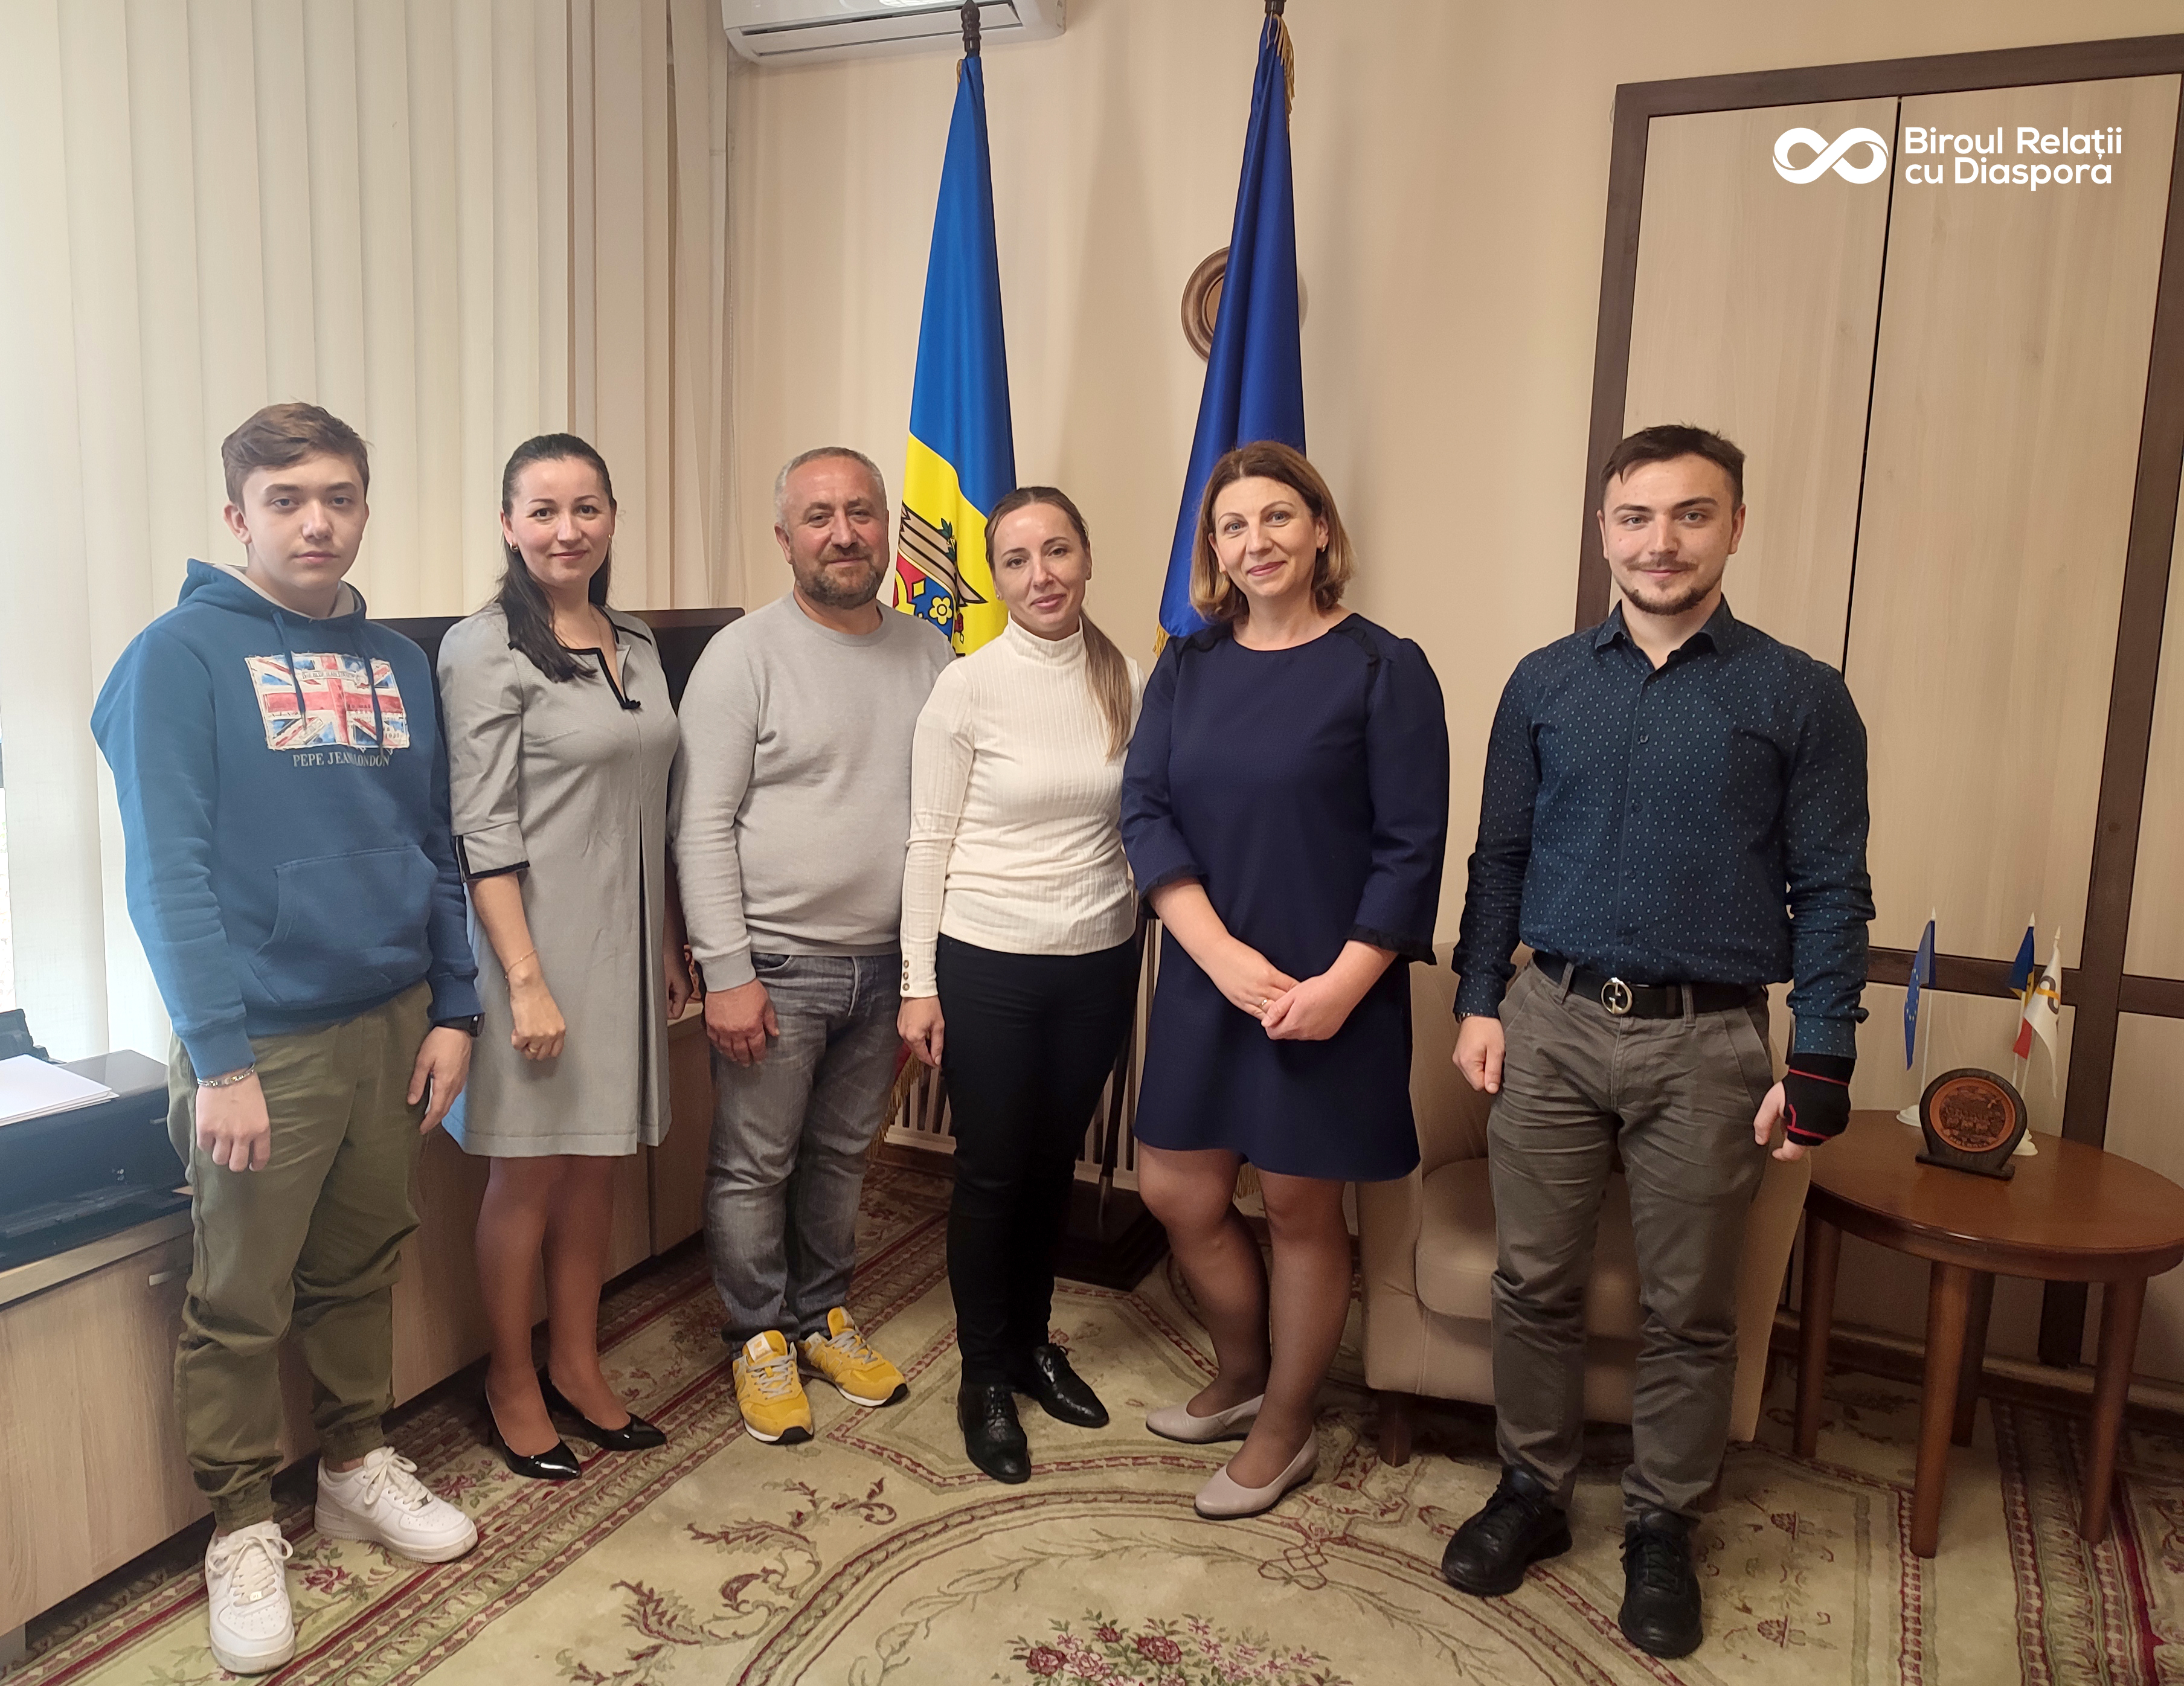 The Chiriac family visited the Diaspora Relations Bureau